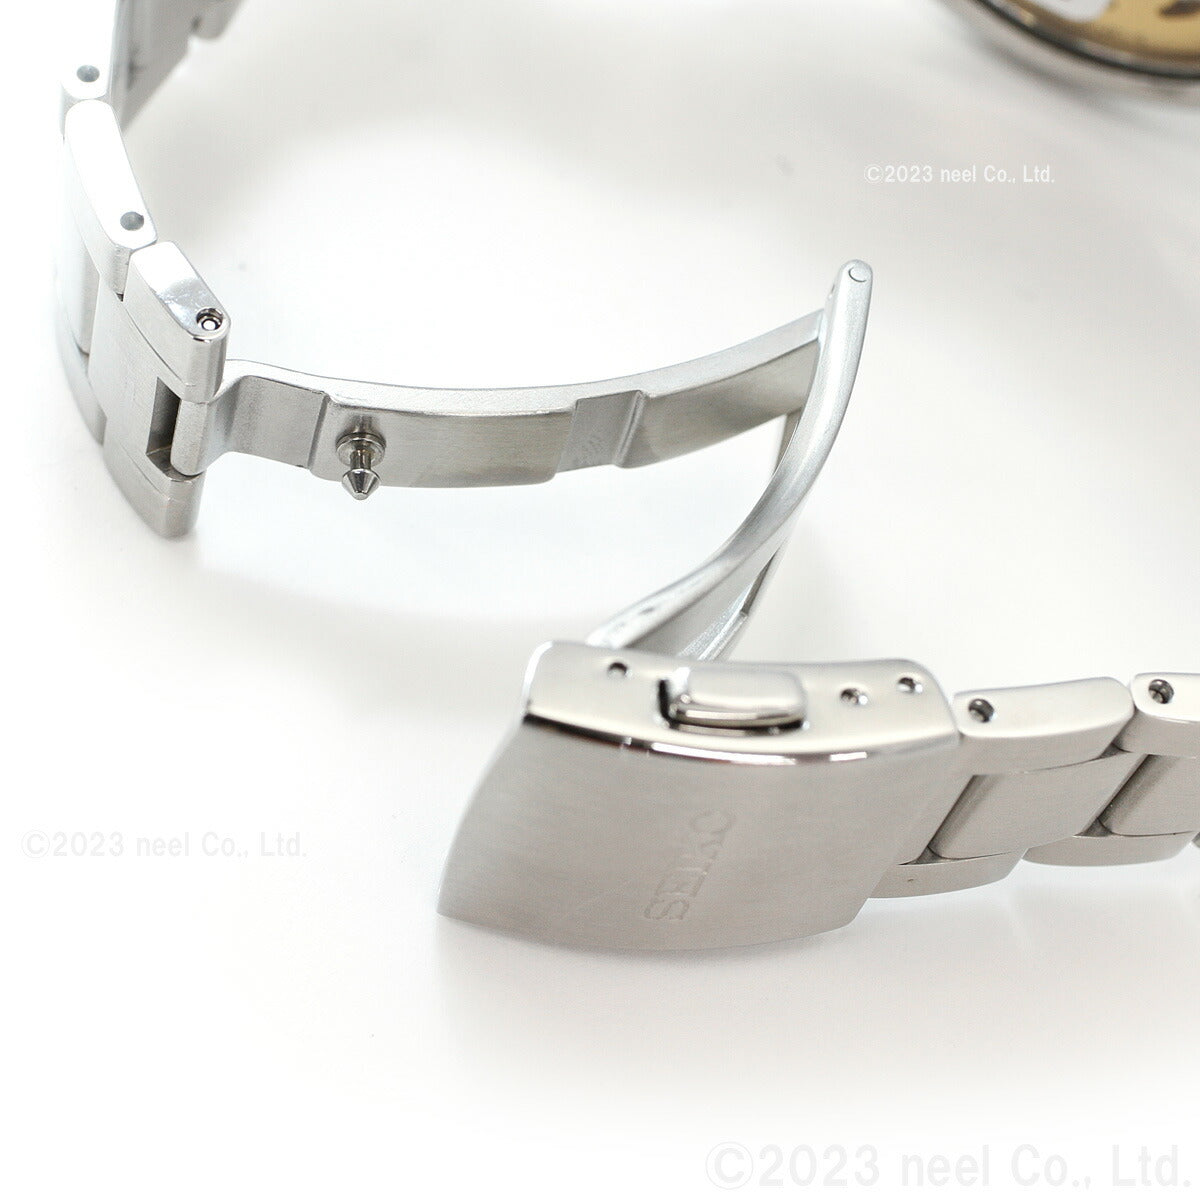 セイコー メカニカル プレザージュ セミスケルトン オープンハート 自動巻き 腕時計 メンズ SARY189 SEIKO Mechanical PRESAGE ベーシックライン